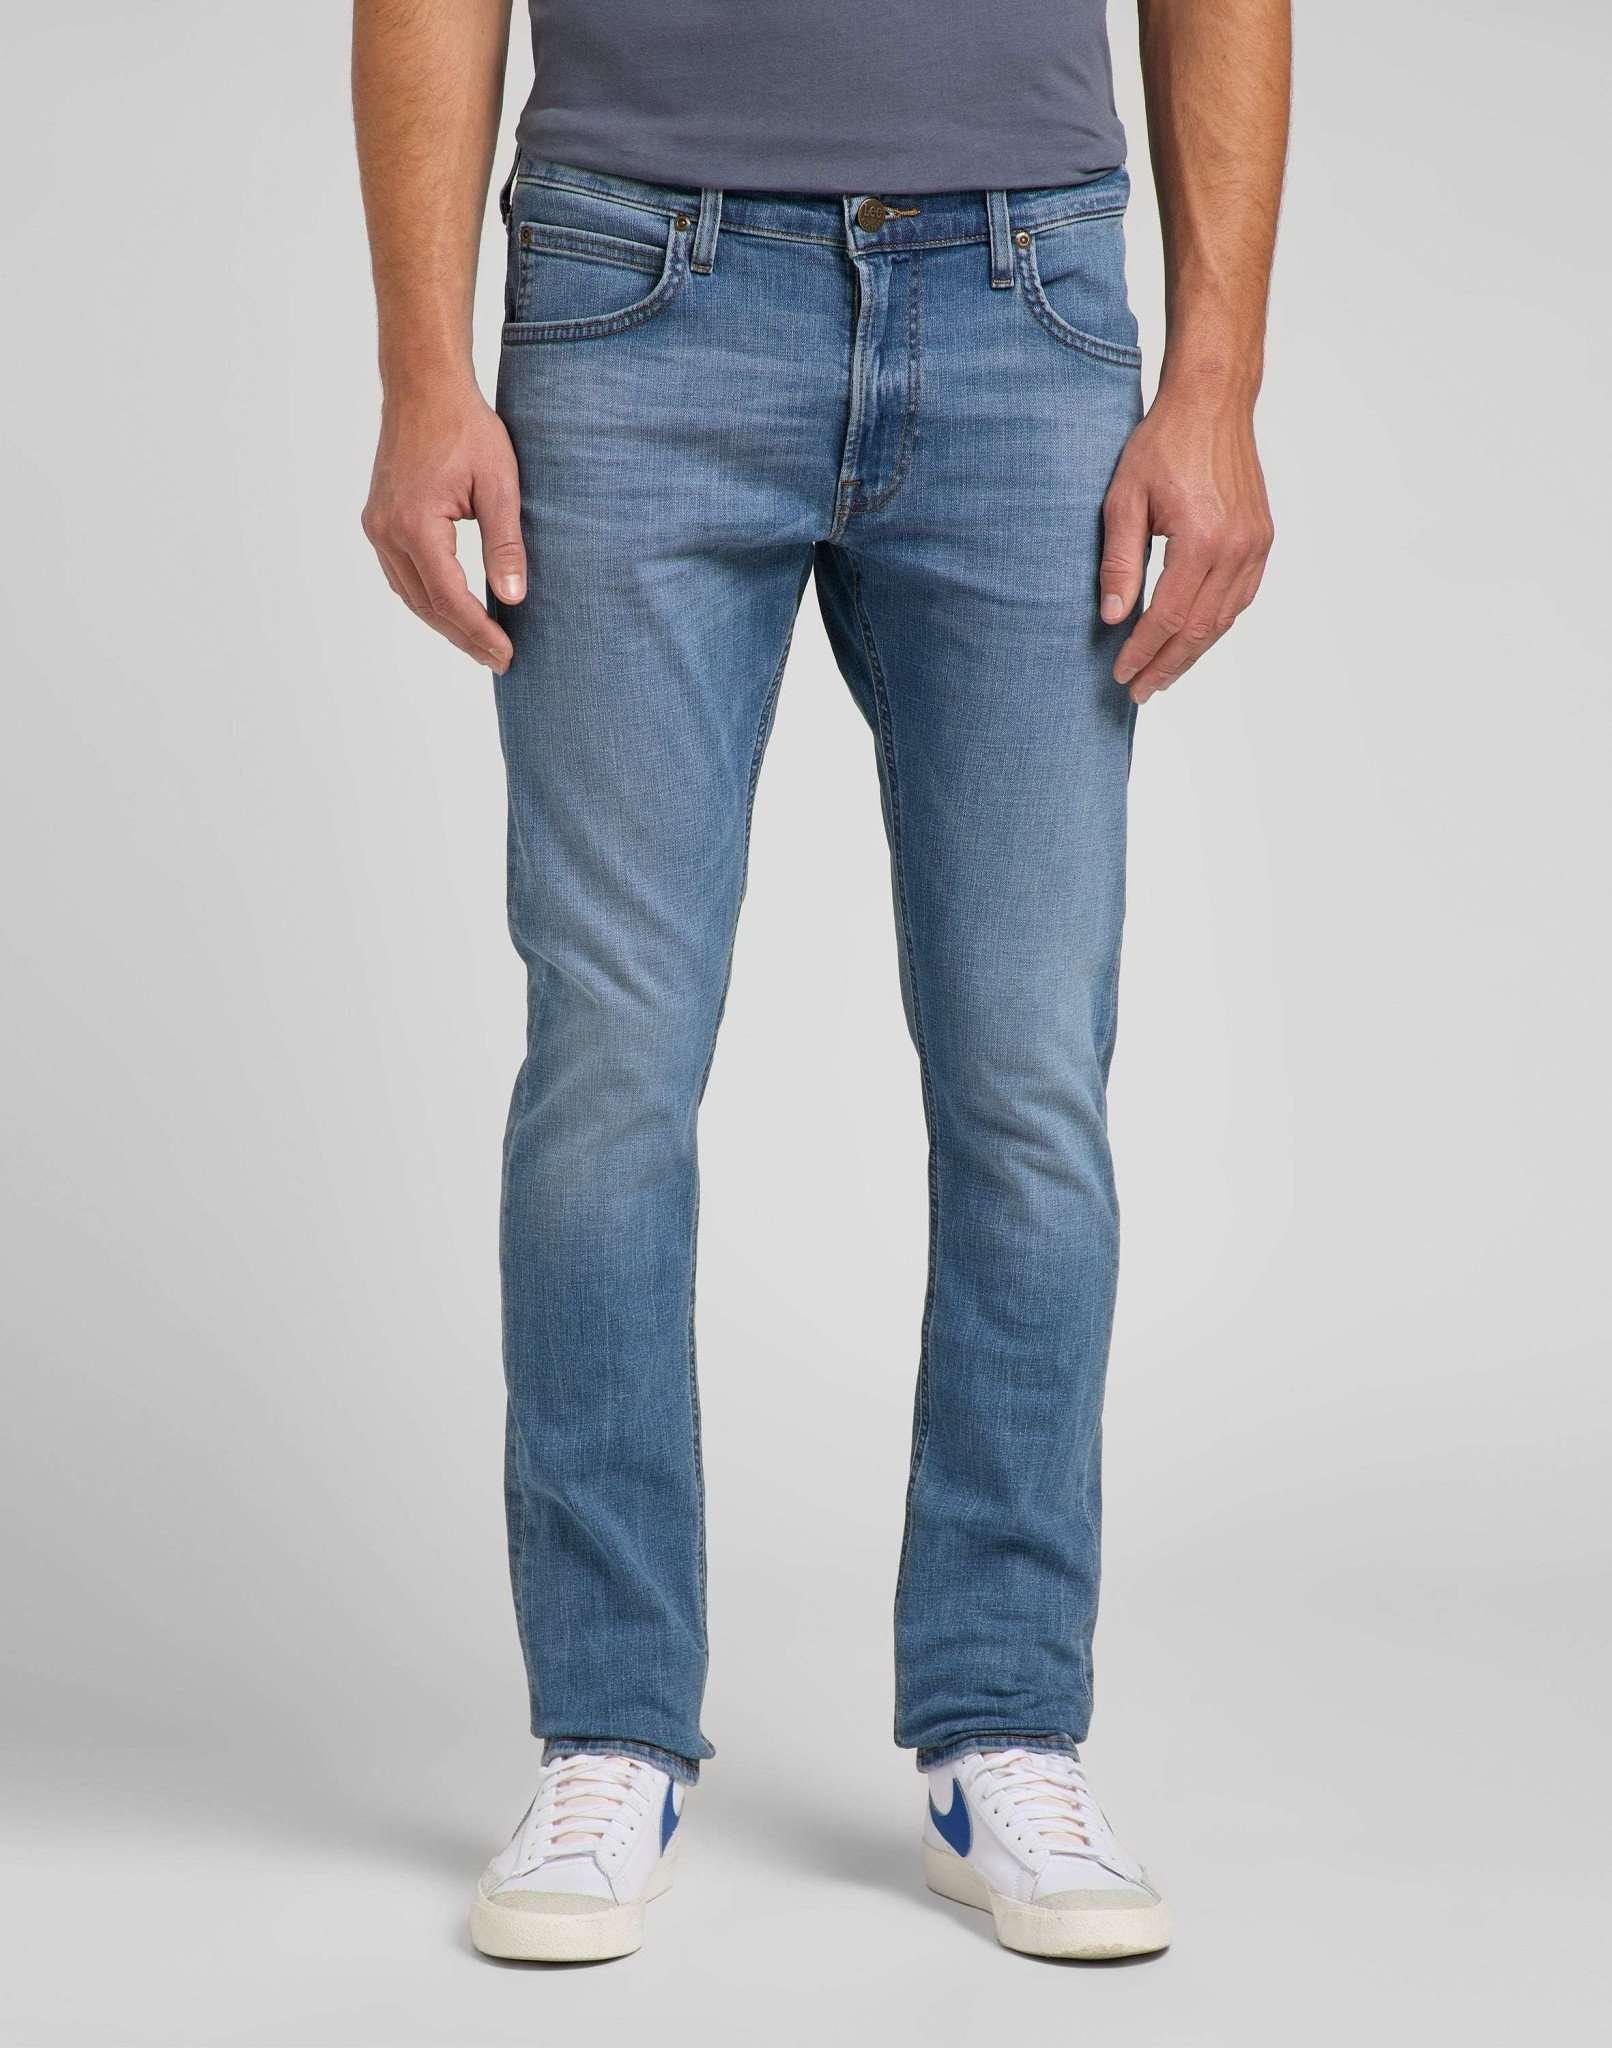 Jeans Slim Fit Luke Herren Blau Denim L30/W33 von Lee